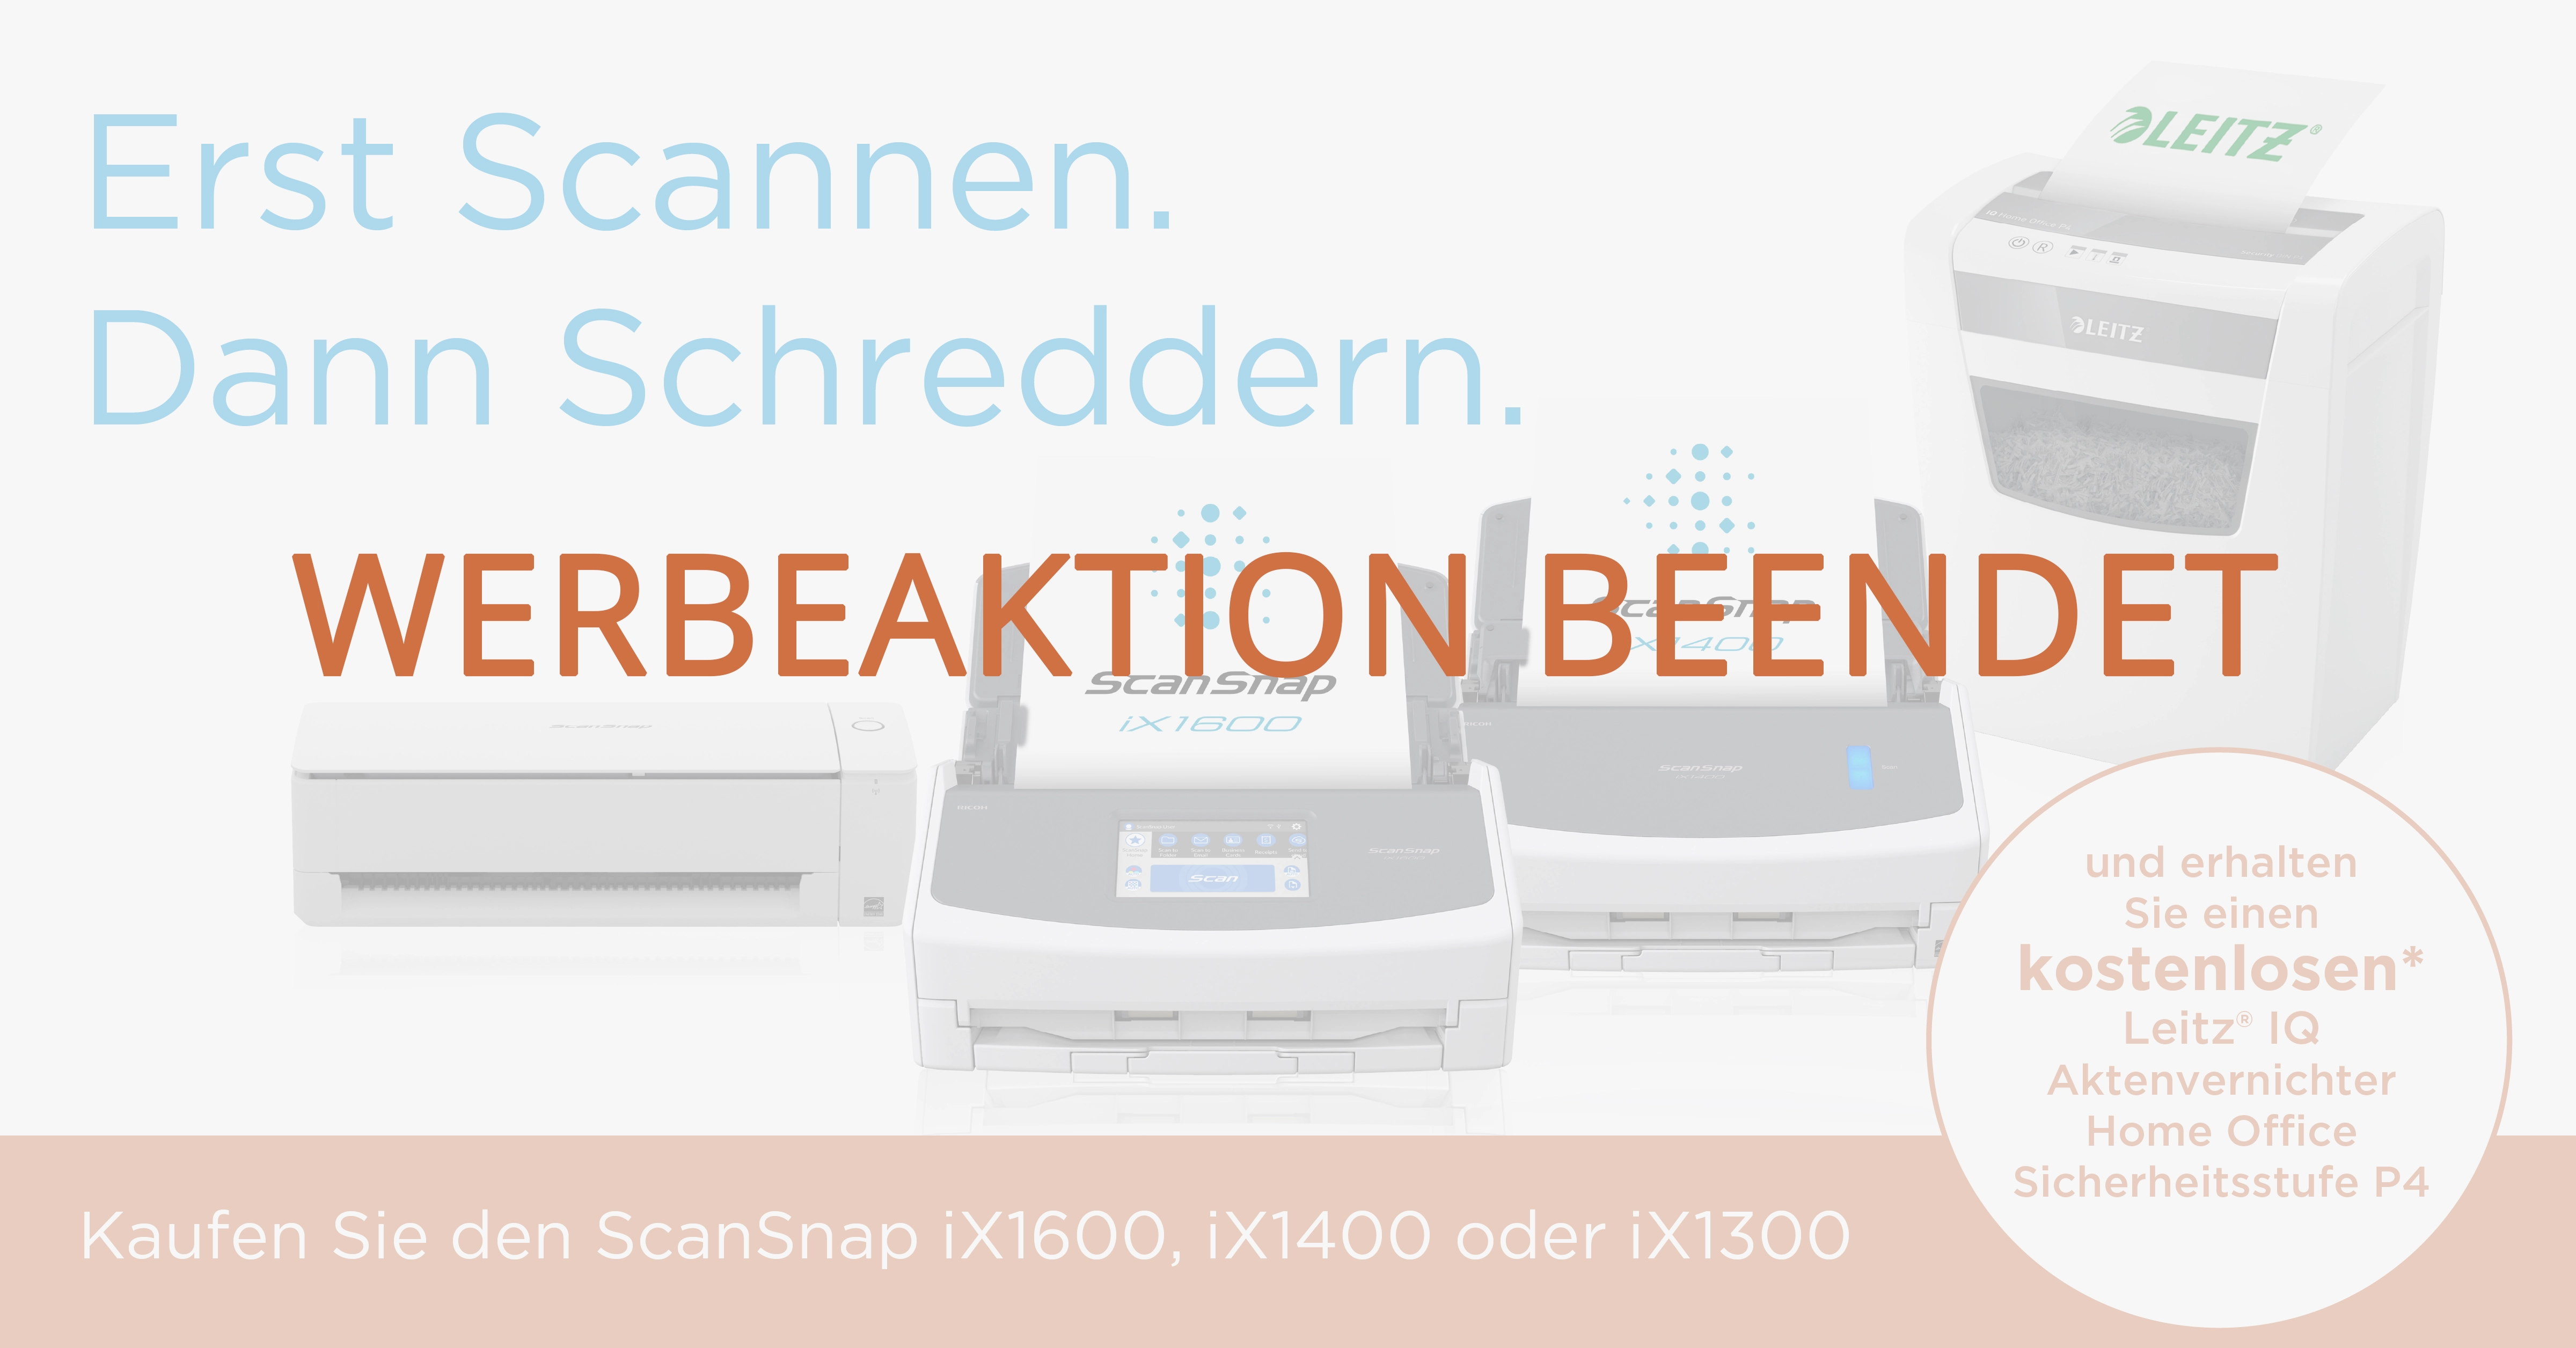 Der ScanSnap iX1600, iX1400 & iX1300 jetzt mit kostenloser Promotion-Aktion für einen Aktenvernichter.